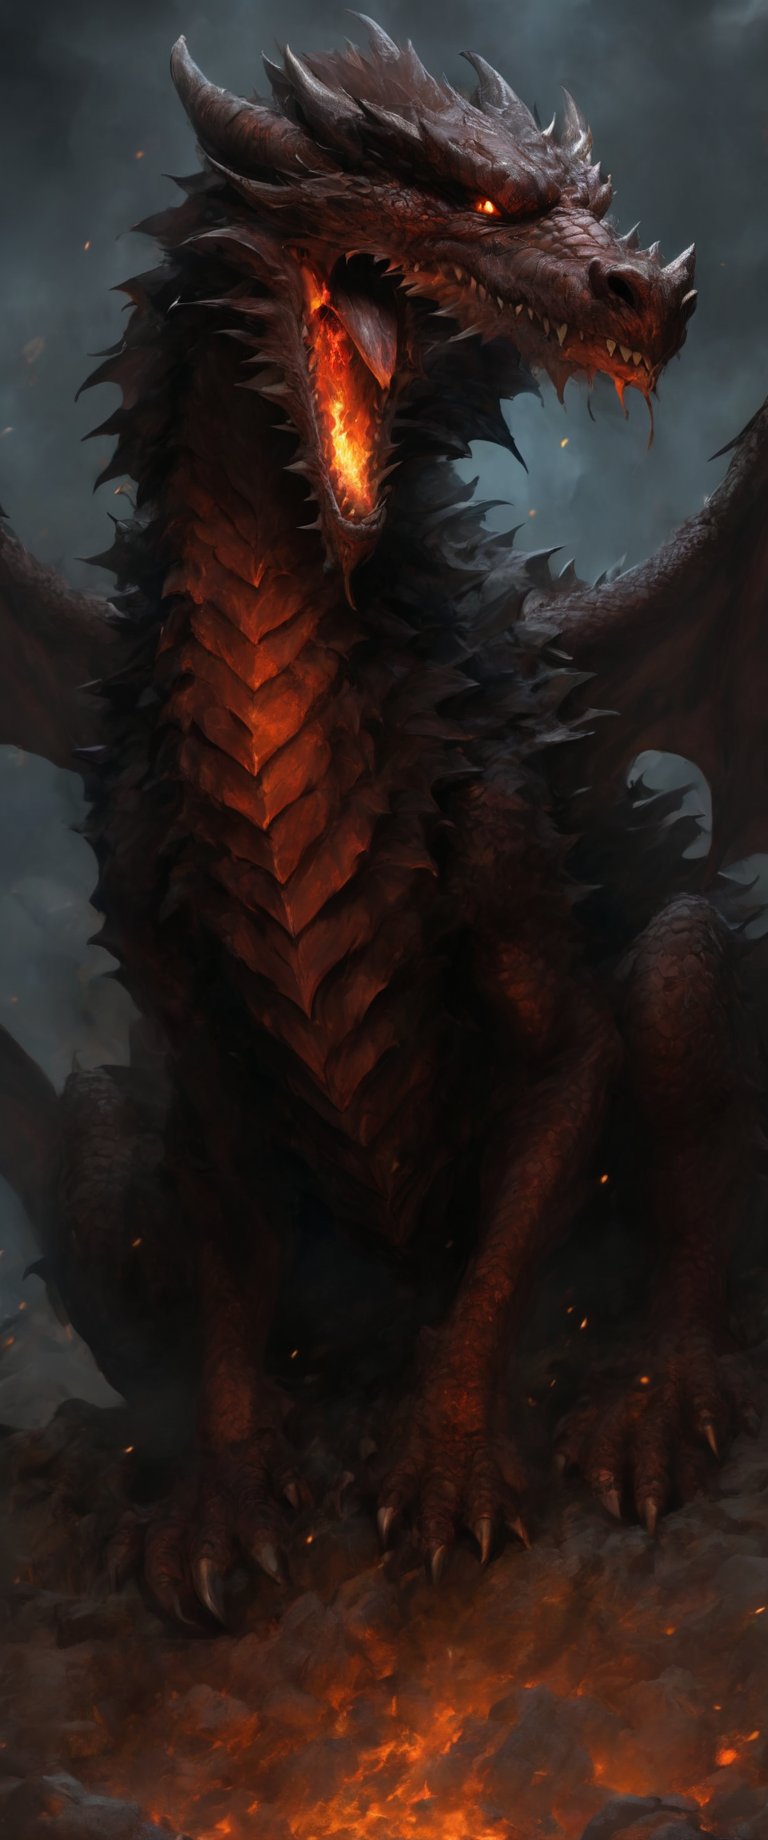 Deception of a medival  dragon slayer. dark, raw